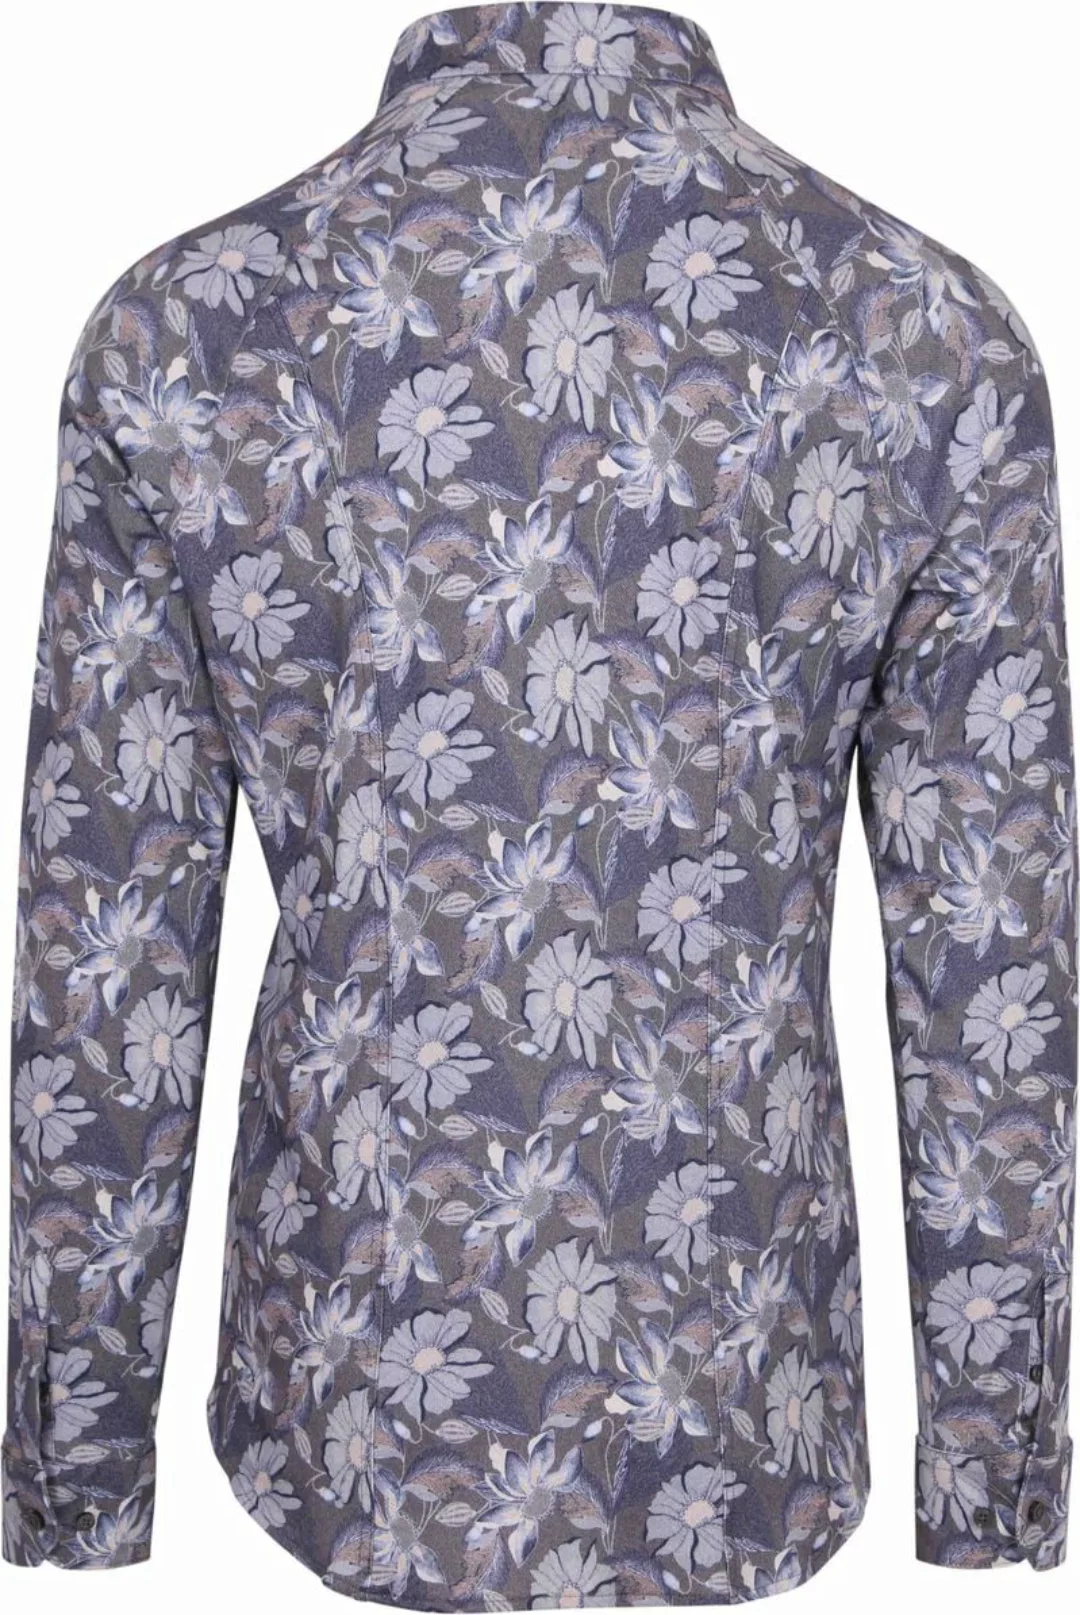 DESOTO Hemd Timeless Elegance Druck Blumen Blau  - Größe 3XL günstig online kaufen